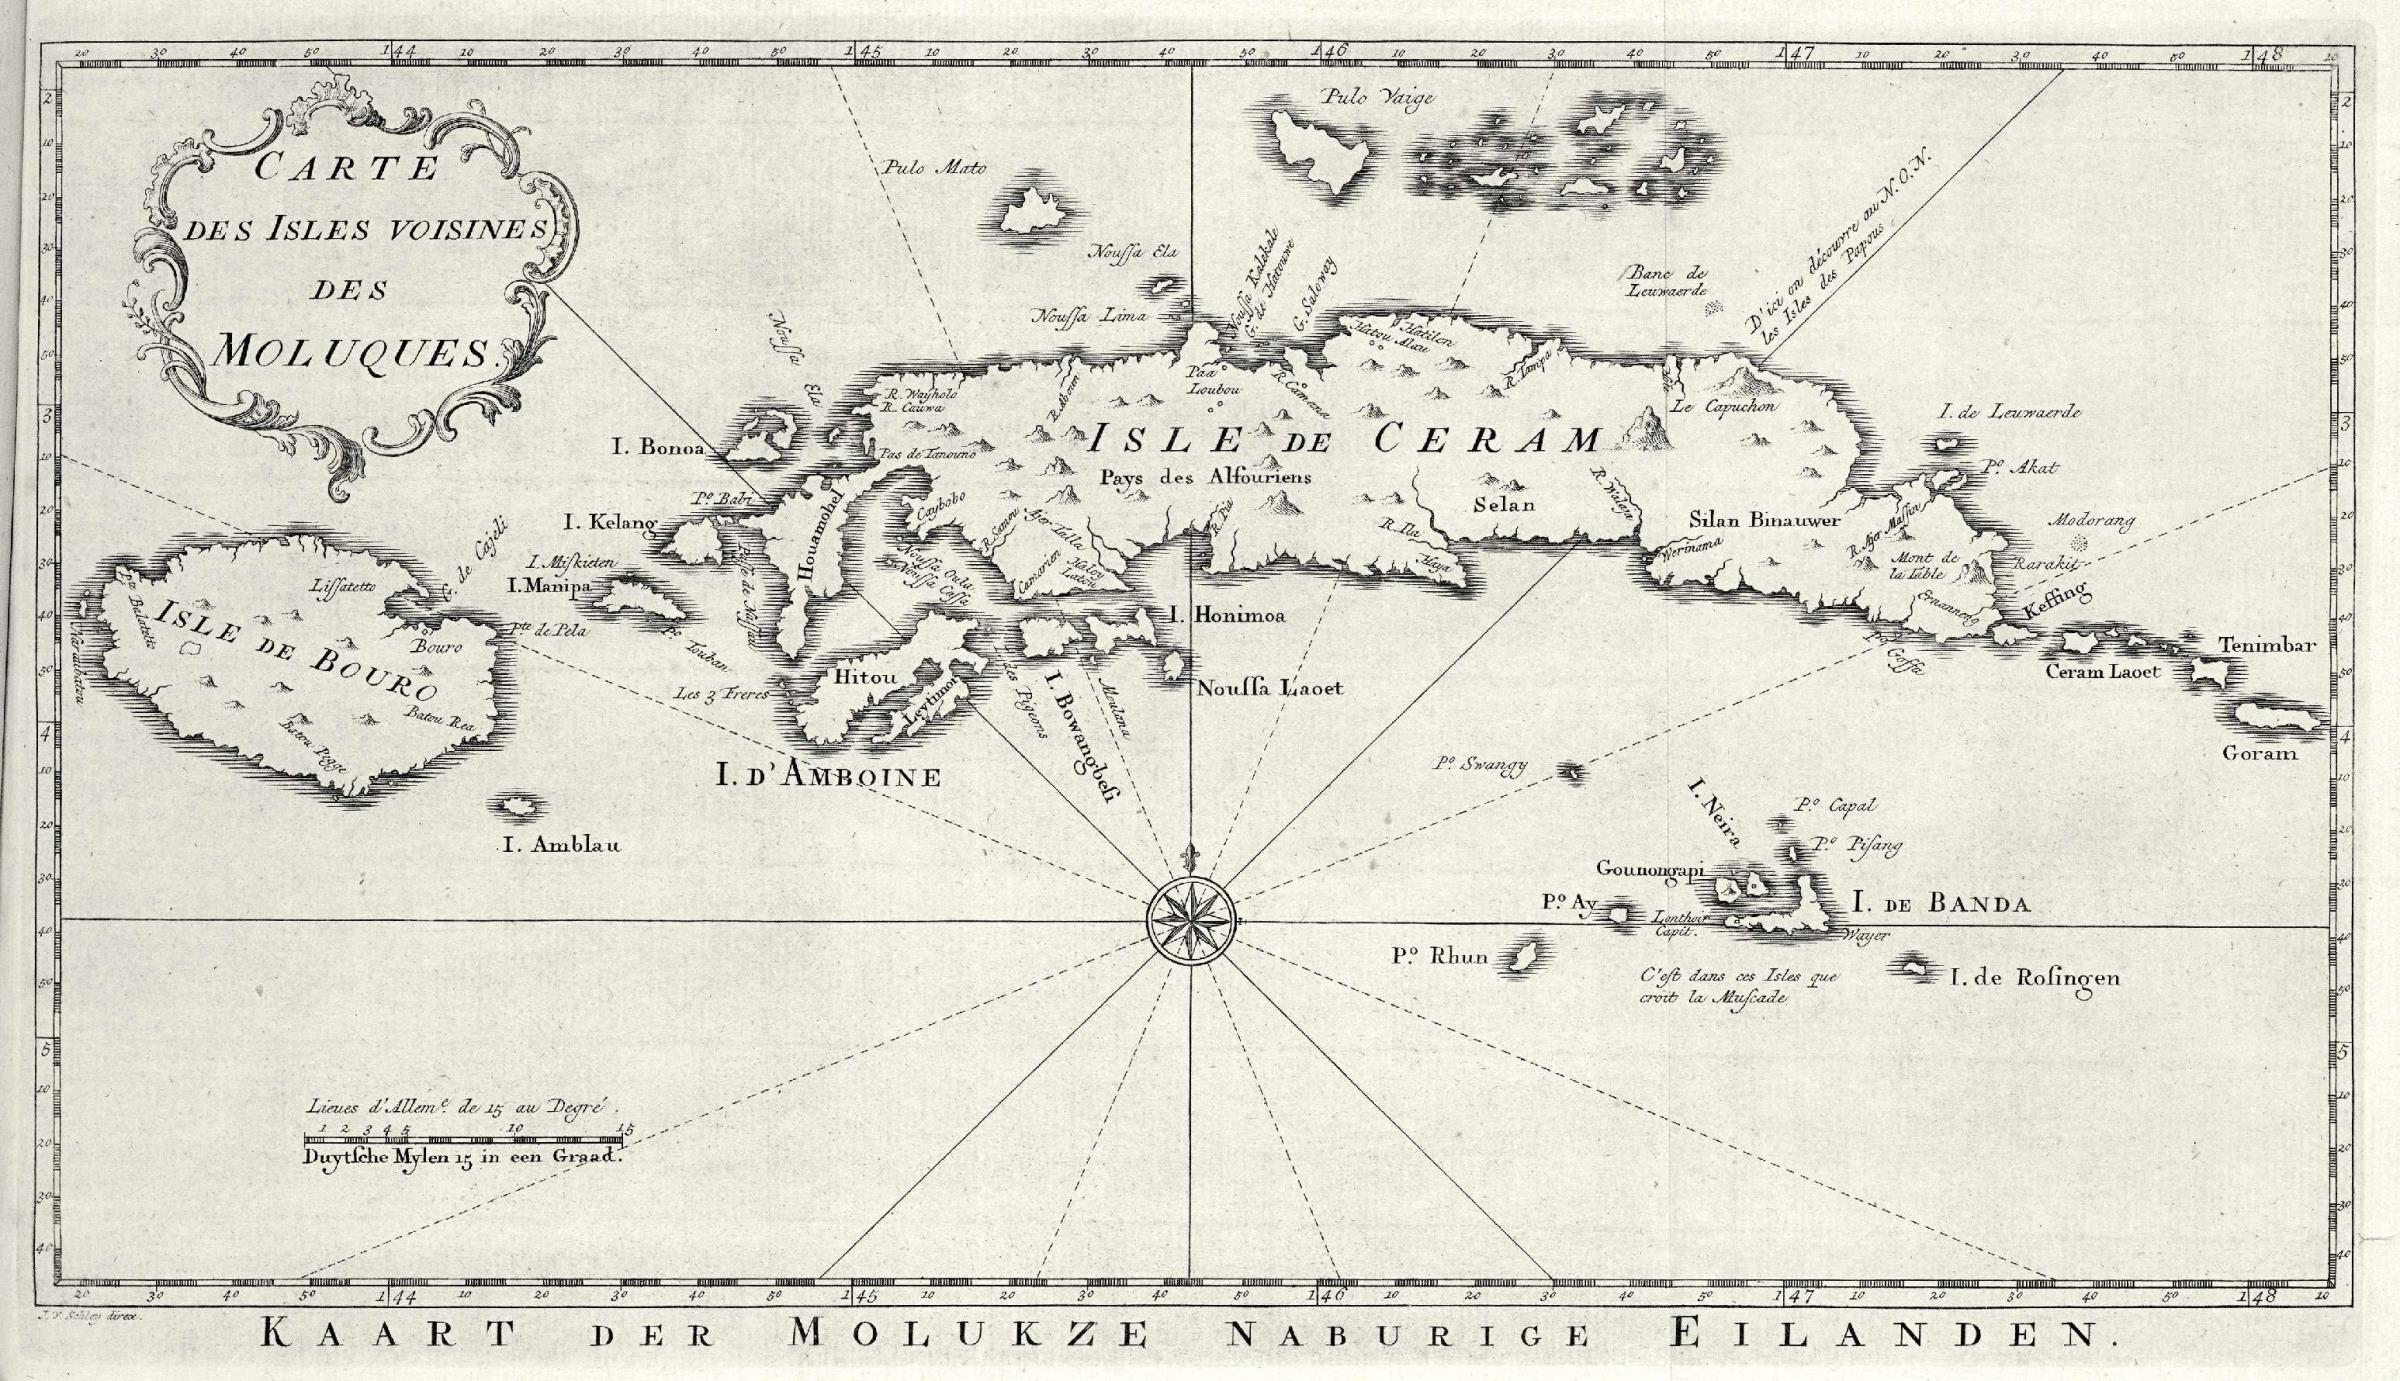 Carte des Moluques du Sud au XVIIIe siècle.